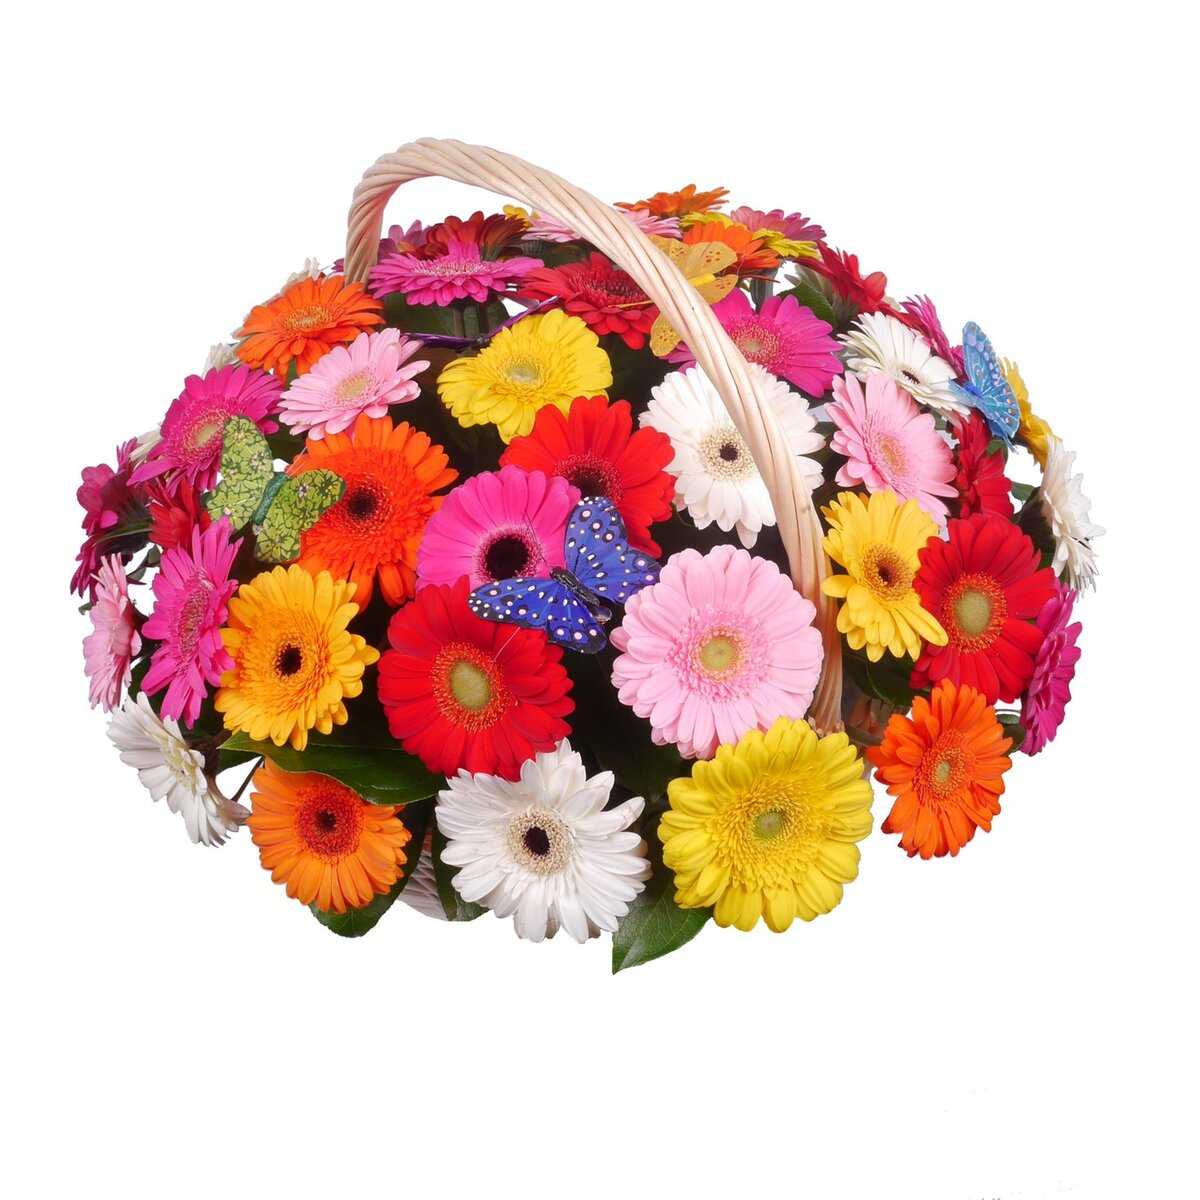 Хотите узнать какие цветы маме дарить на день рождения. советы +фото